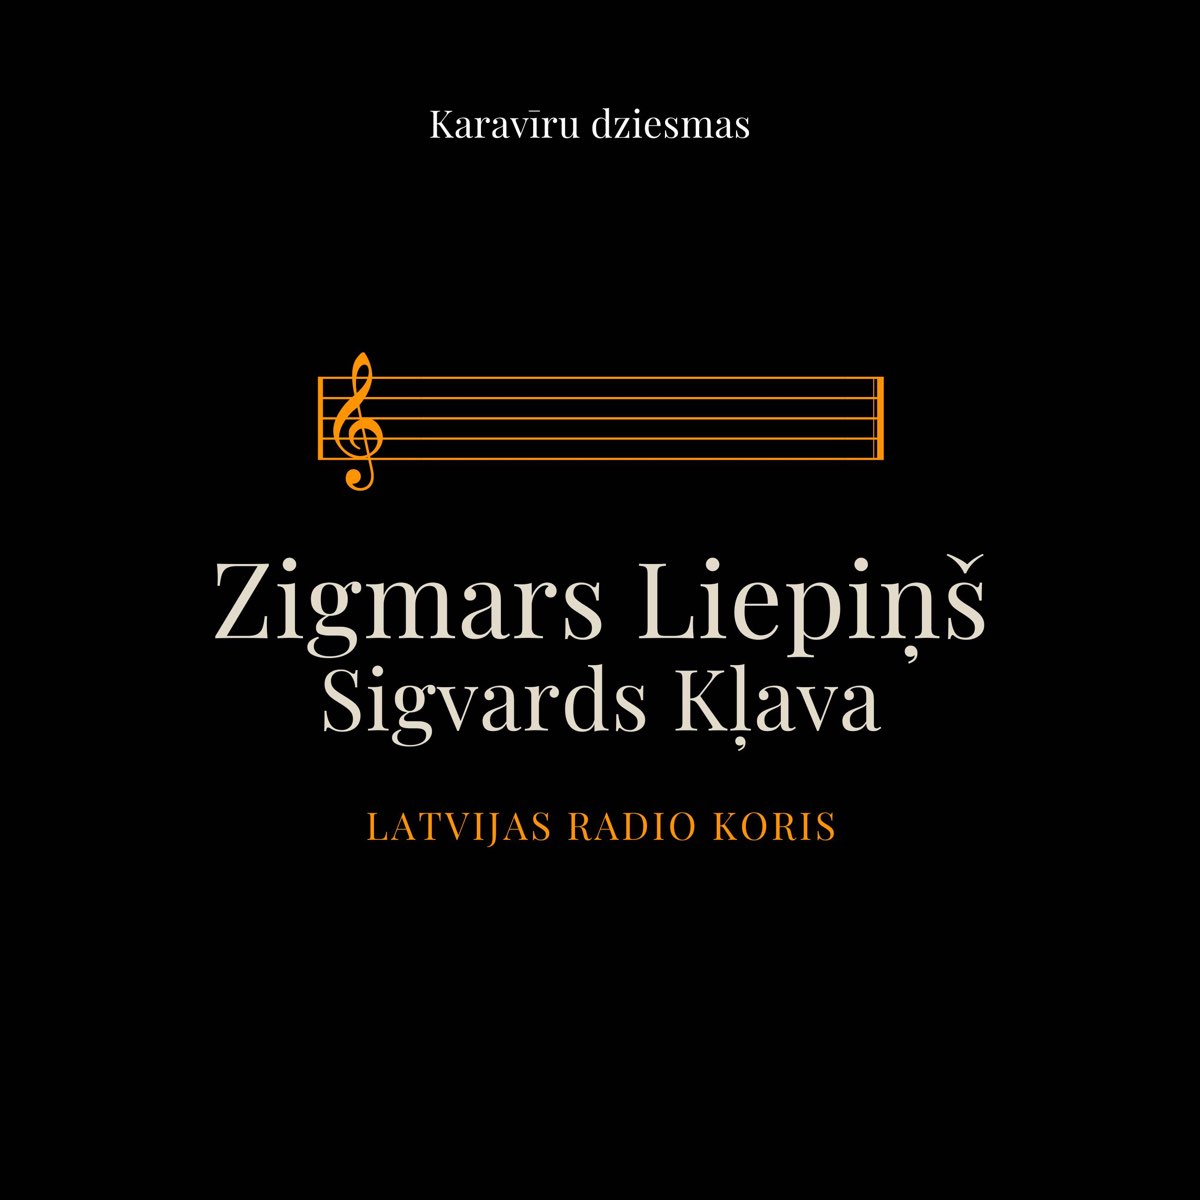 Karavīru Dziesmas by Zigmars Liepins, Sigvards Kļava & Latvijas Radio Koris  on Apple Music